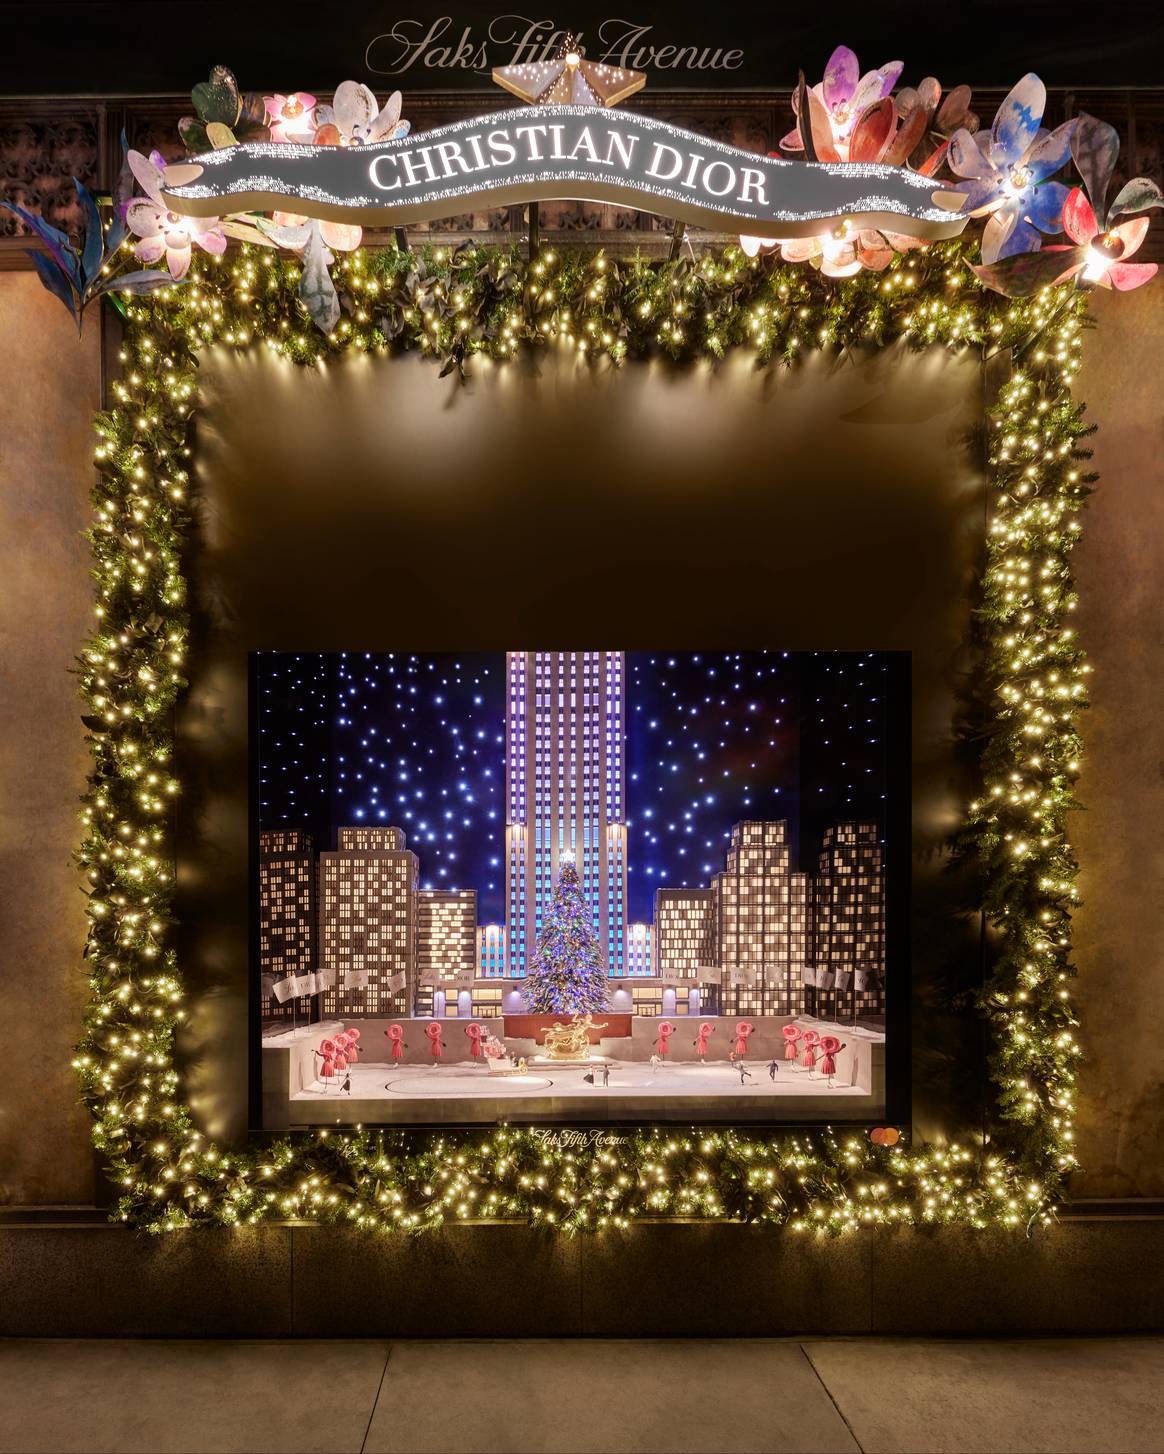 Dior's 'Carousel of Dreams' holiday windows at Saks